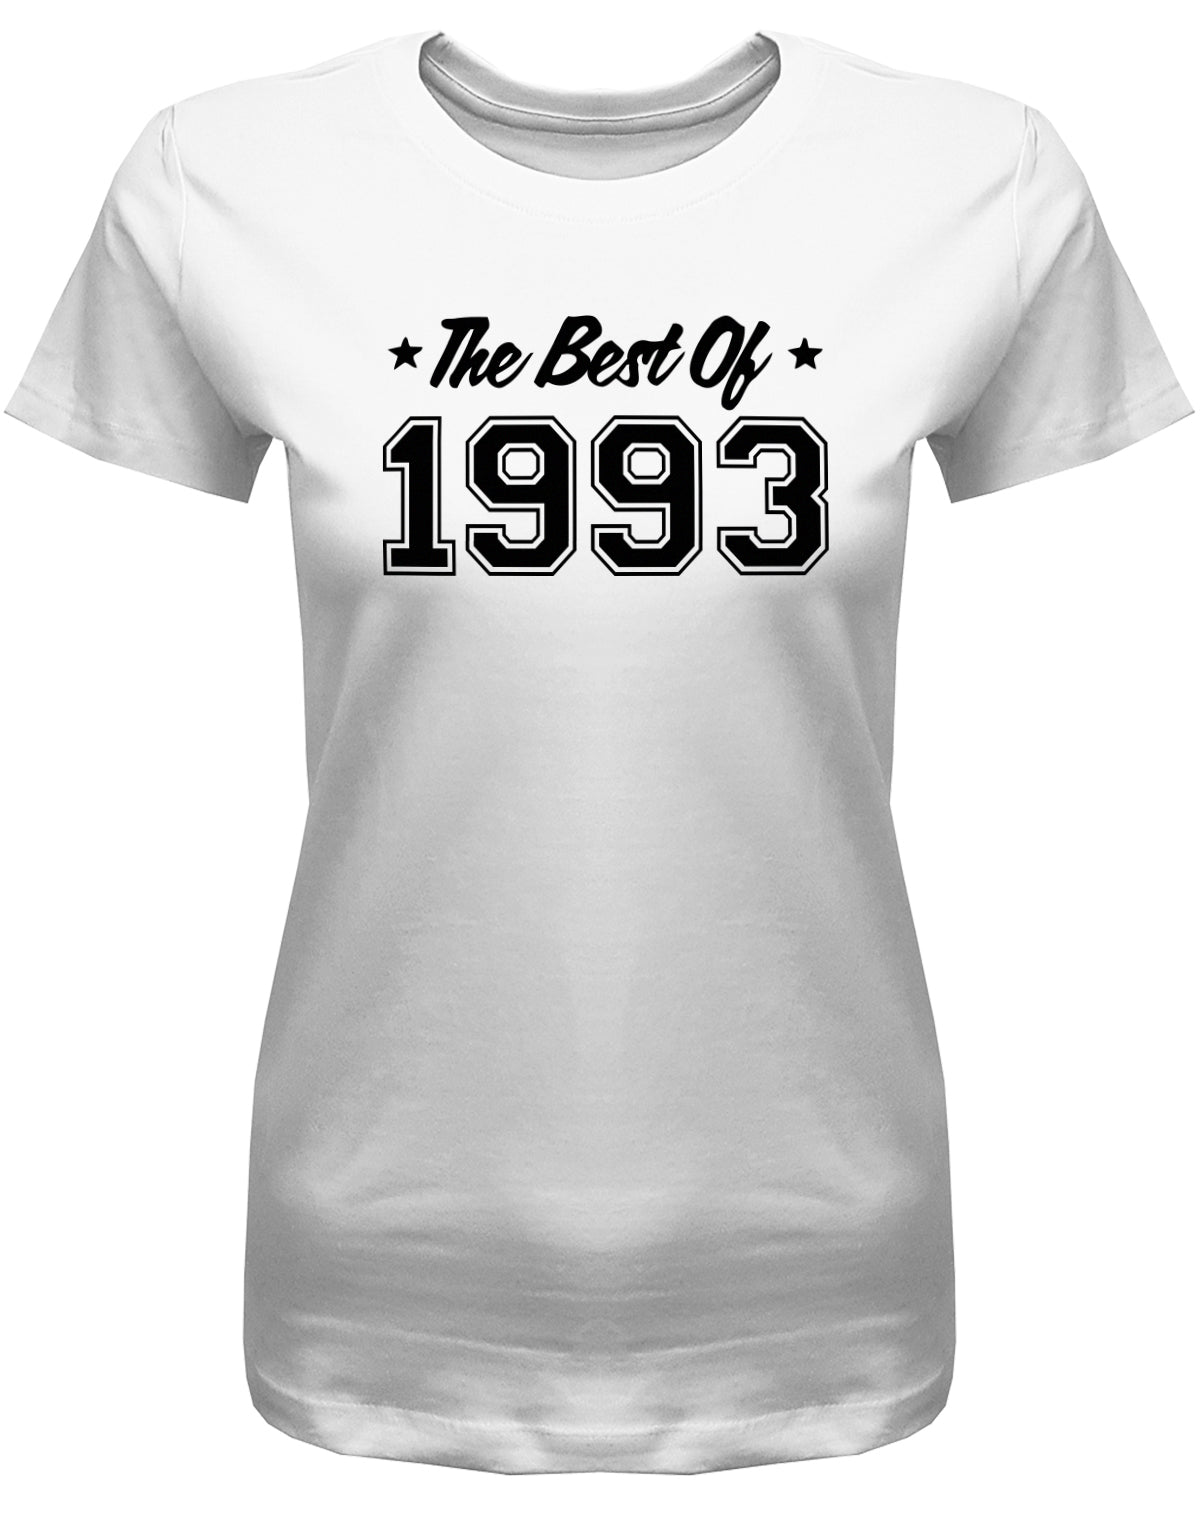 Lustiges T-Shirt zum 30. Geburtstag für die Frau Bedruckt mit: The best of 1993 ✓ Geschenk zum 30 geburtstag Frau ✓ 1993 geburtstag Frau ✓ 30 Geburtstag tshirt ✓ shirt geburtstag 30 Weiss